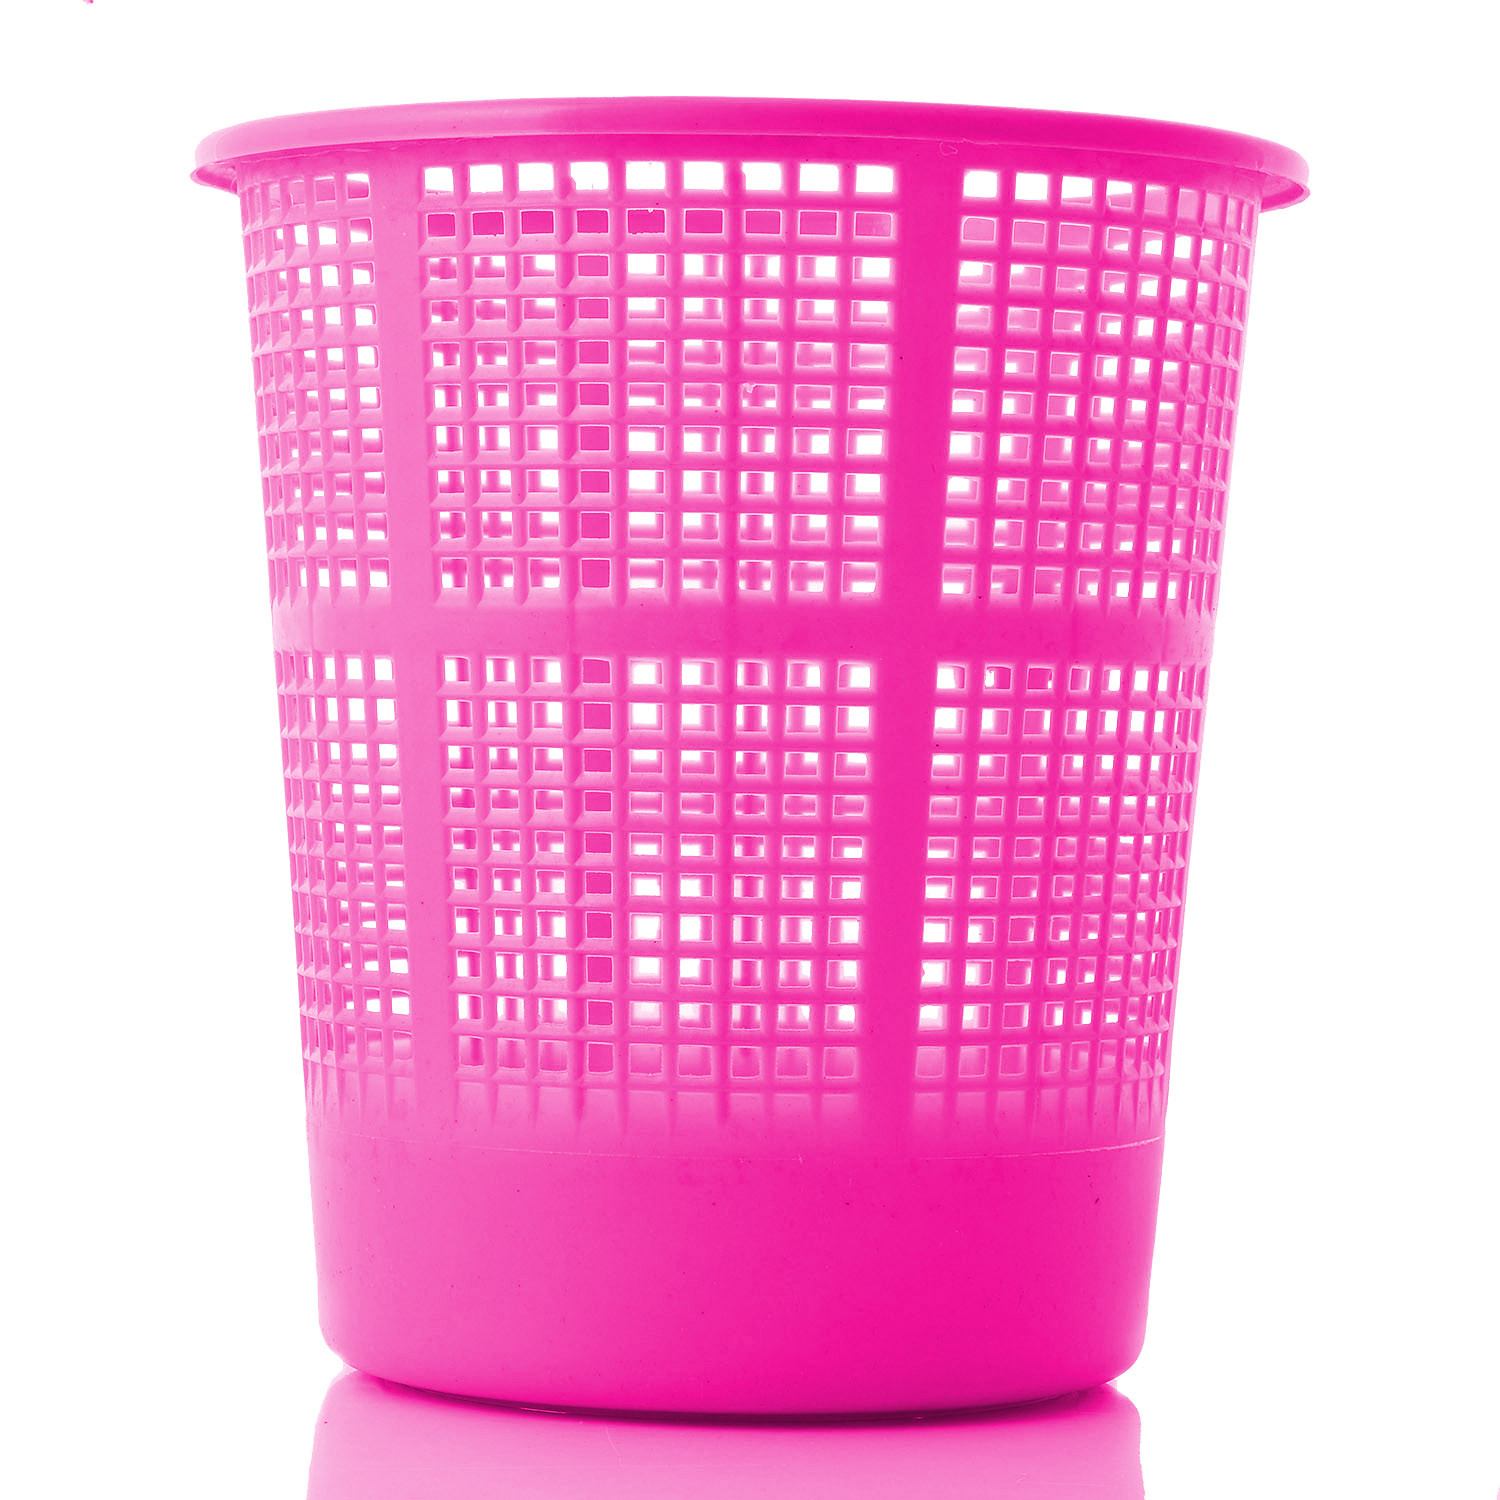 Kuber Industries Plastic Mesh Dustbin Garbage Bin for Office use, School, Bedroom,Kids Room, Home, Multi Purpose,5 Liters (Brown & Grey & Pink)-KUBMART284